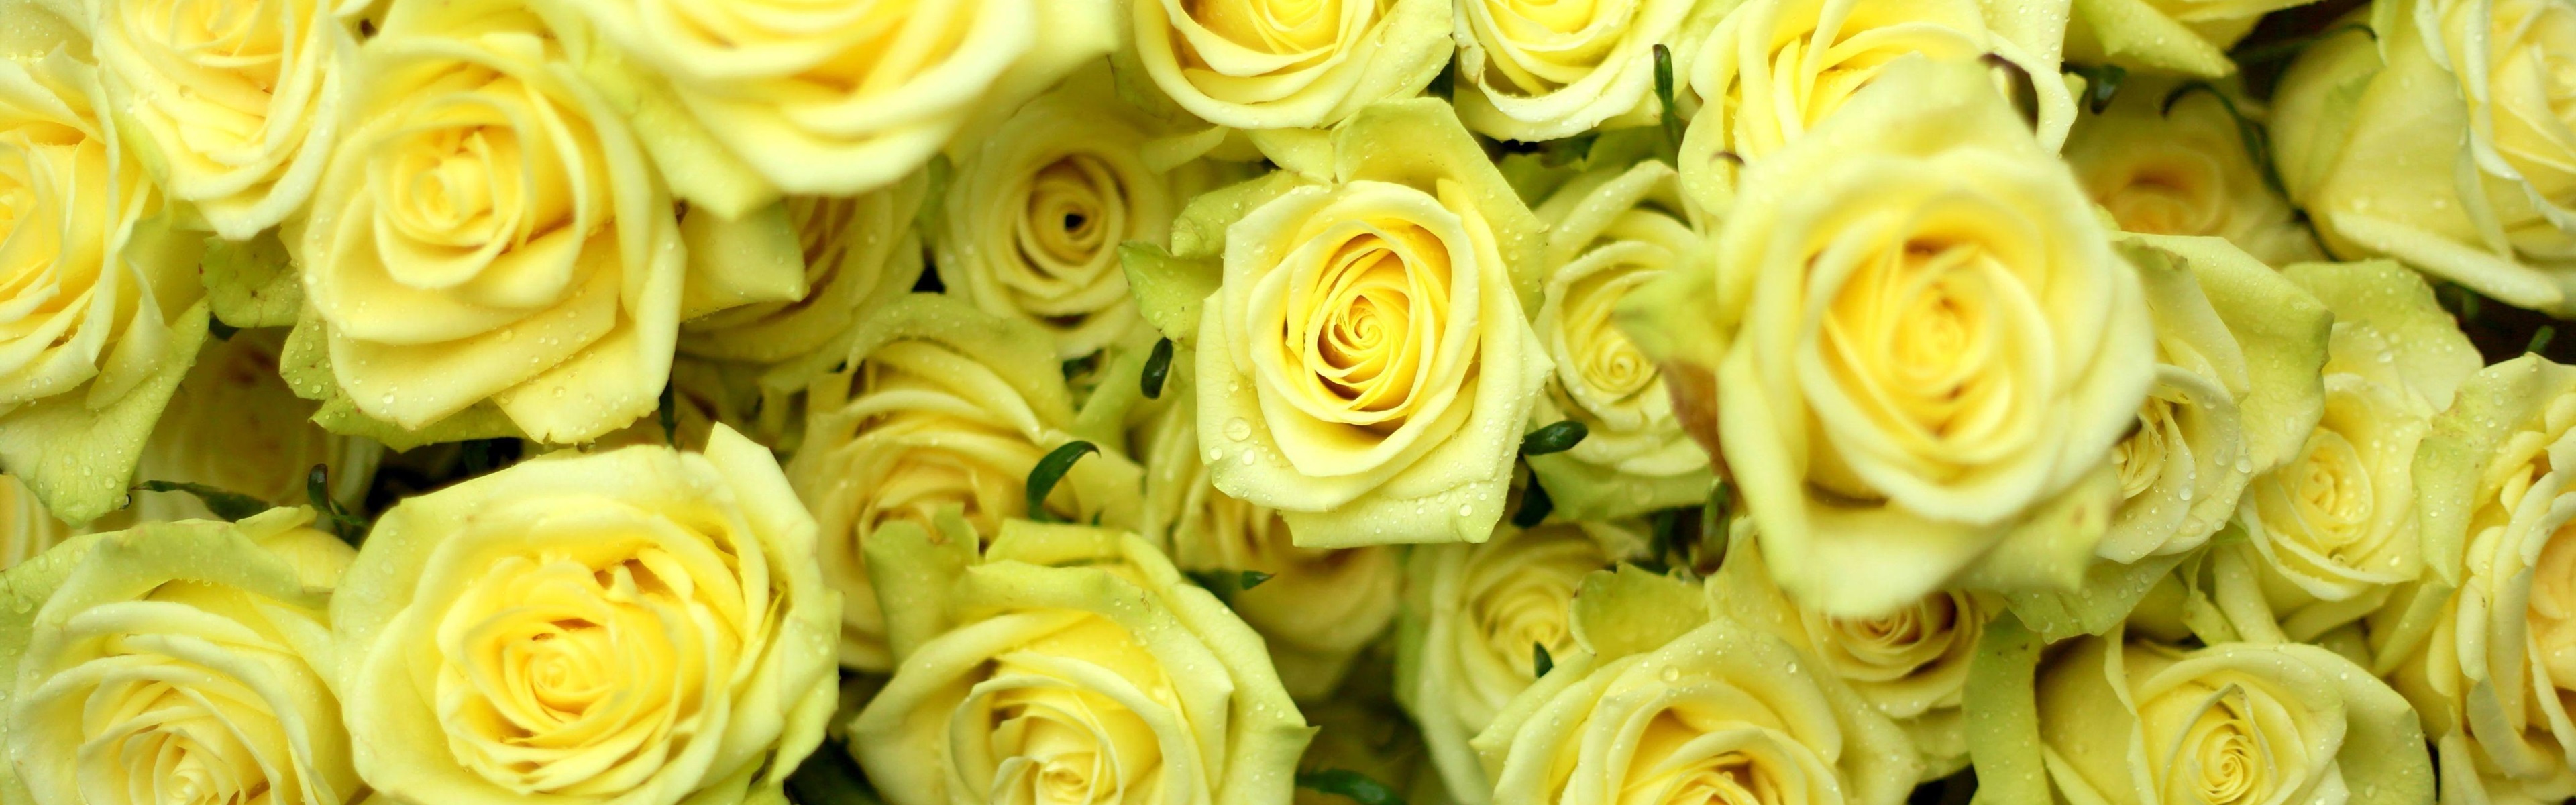 Цветы розы лимонные